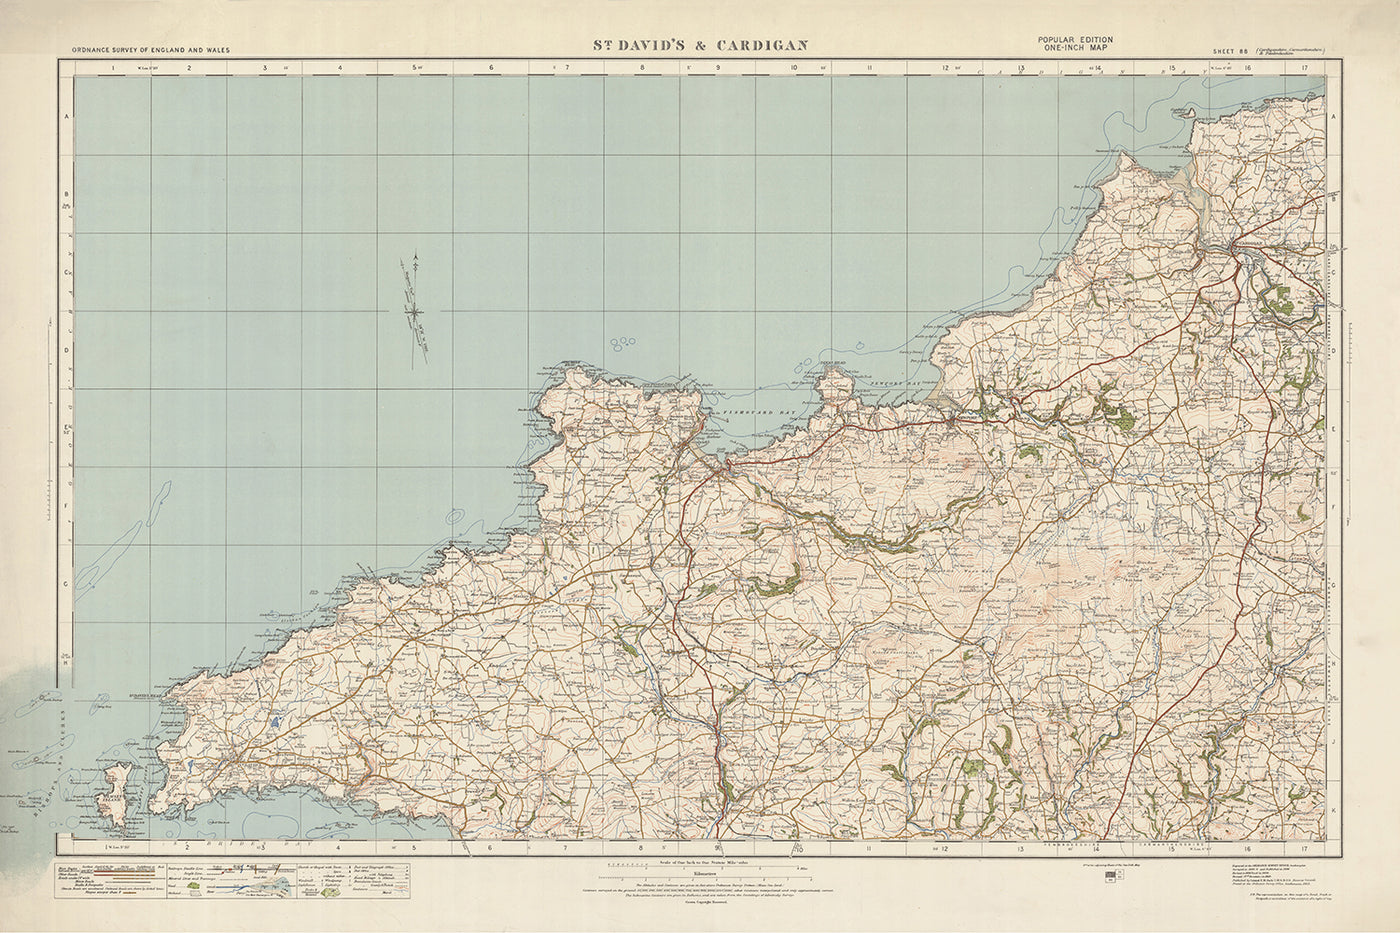 Carte Old Ordnance Survey, feuille 88 - St. Davids & Cardigan, 1925 : Fishguard, Newport, Letterston, l'île Ramsey et le parc national côtier du Pembrokeshire